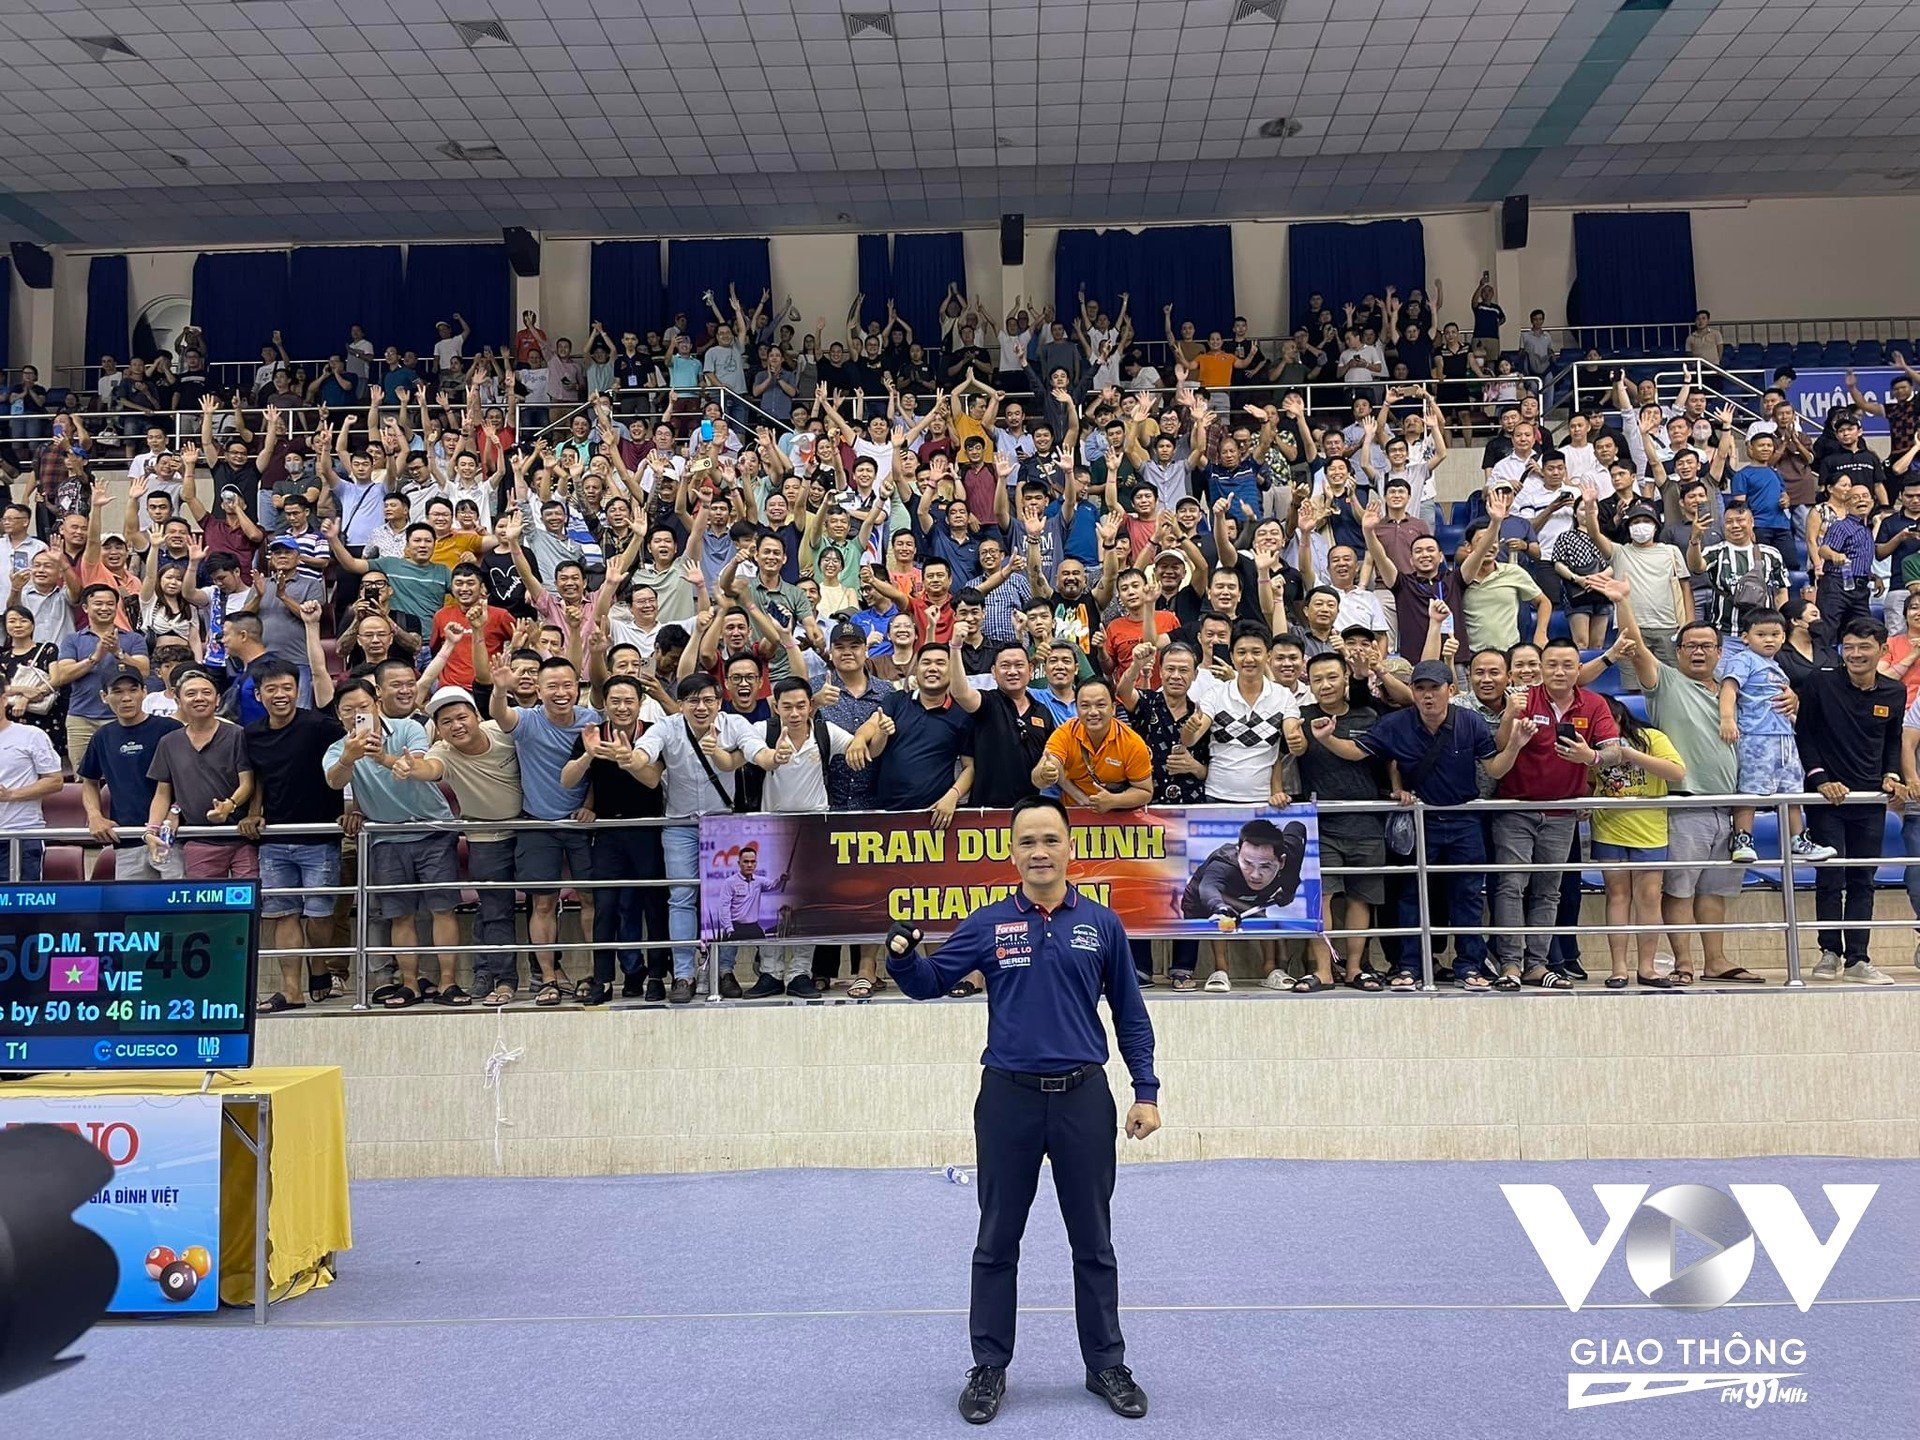 Khán giả cuồng nhiệt tại nhà thi đấu Nguyễn Du chúc mừng chức vô địch bất ngờ của Trần Đức Minh